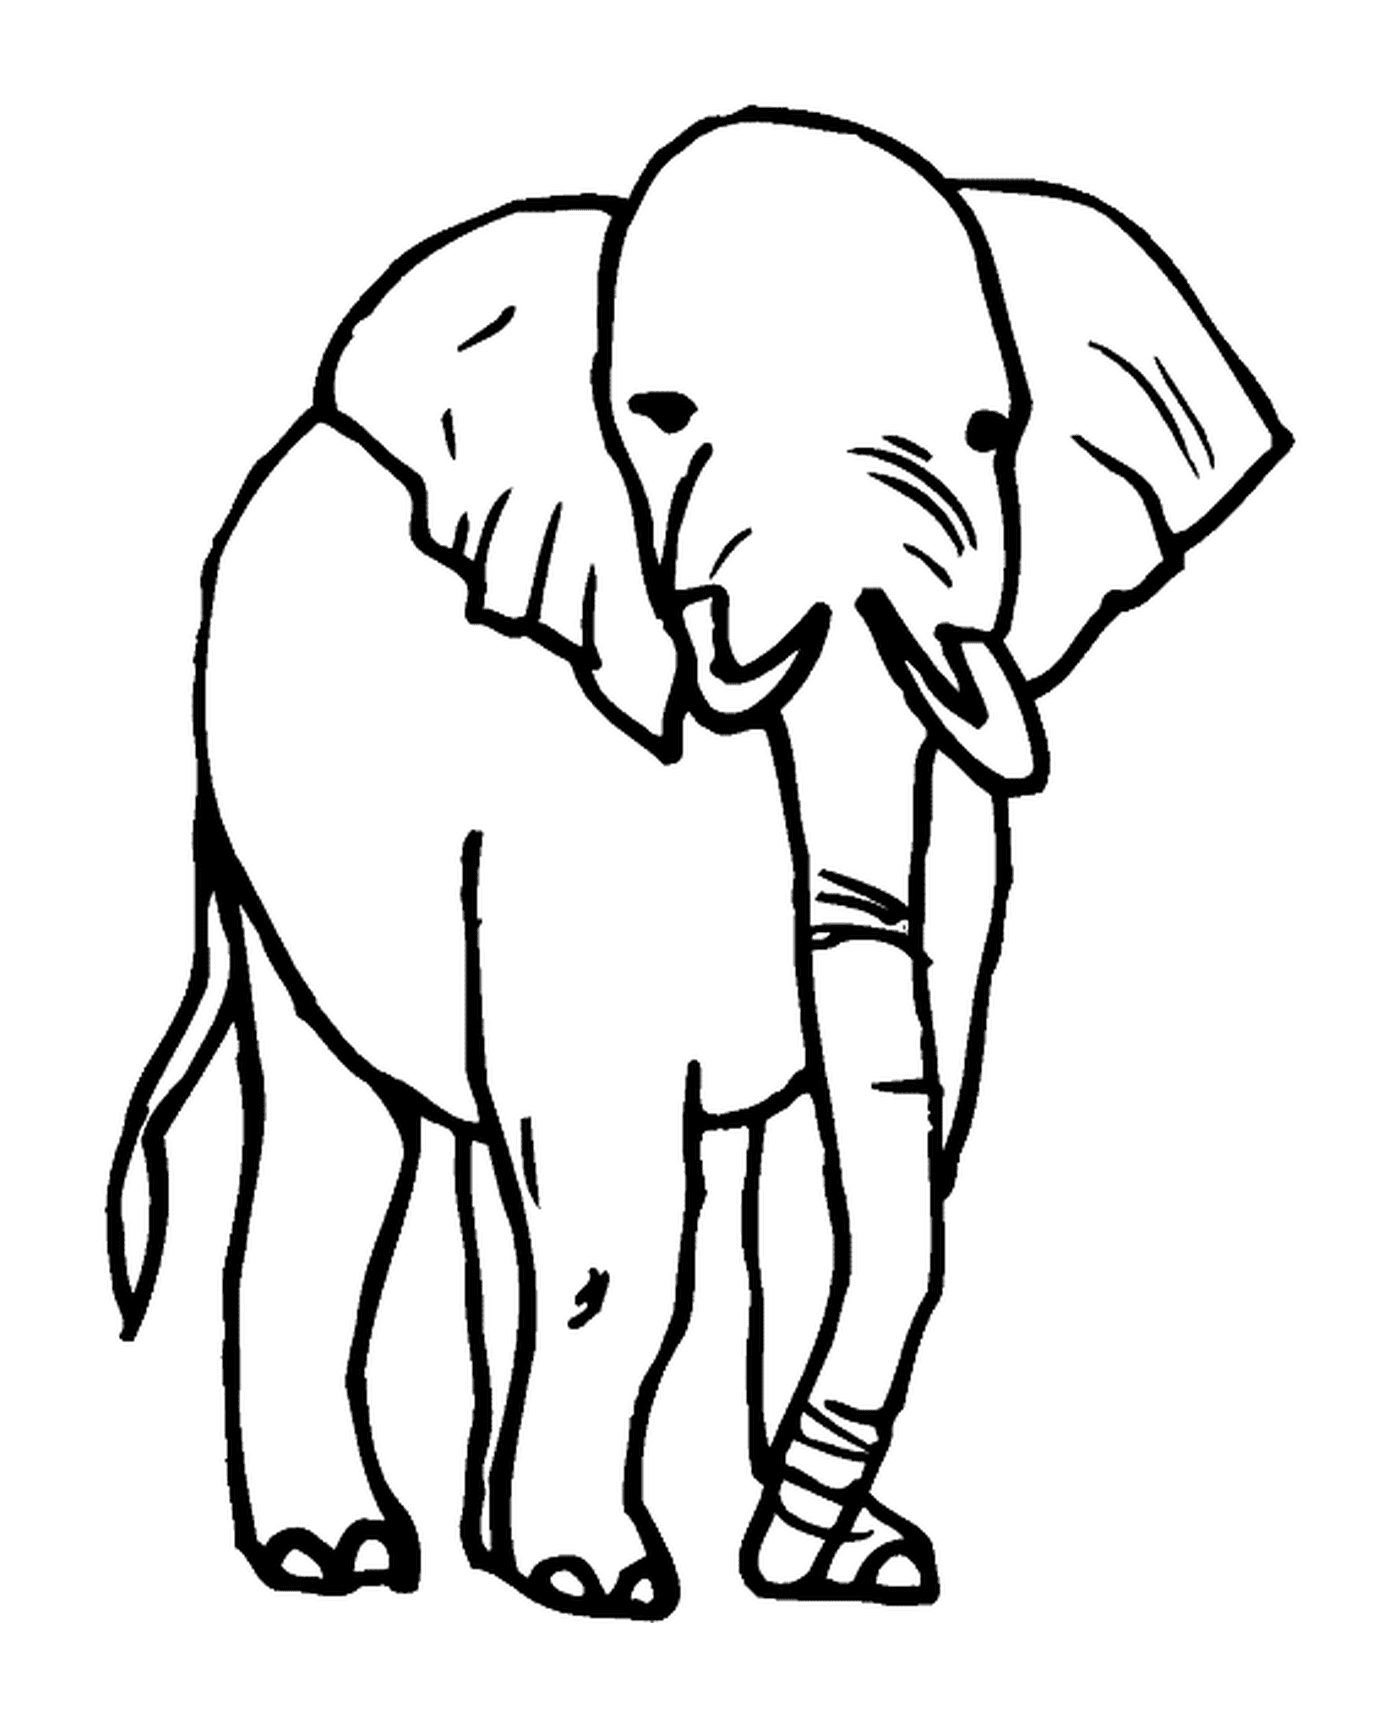  Dibujo de elefantes 